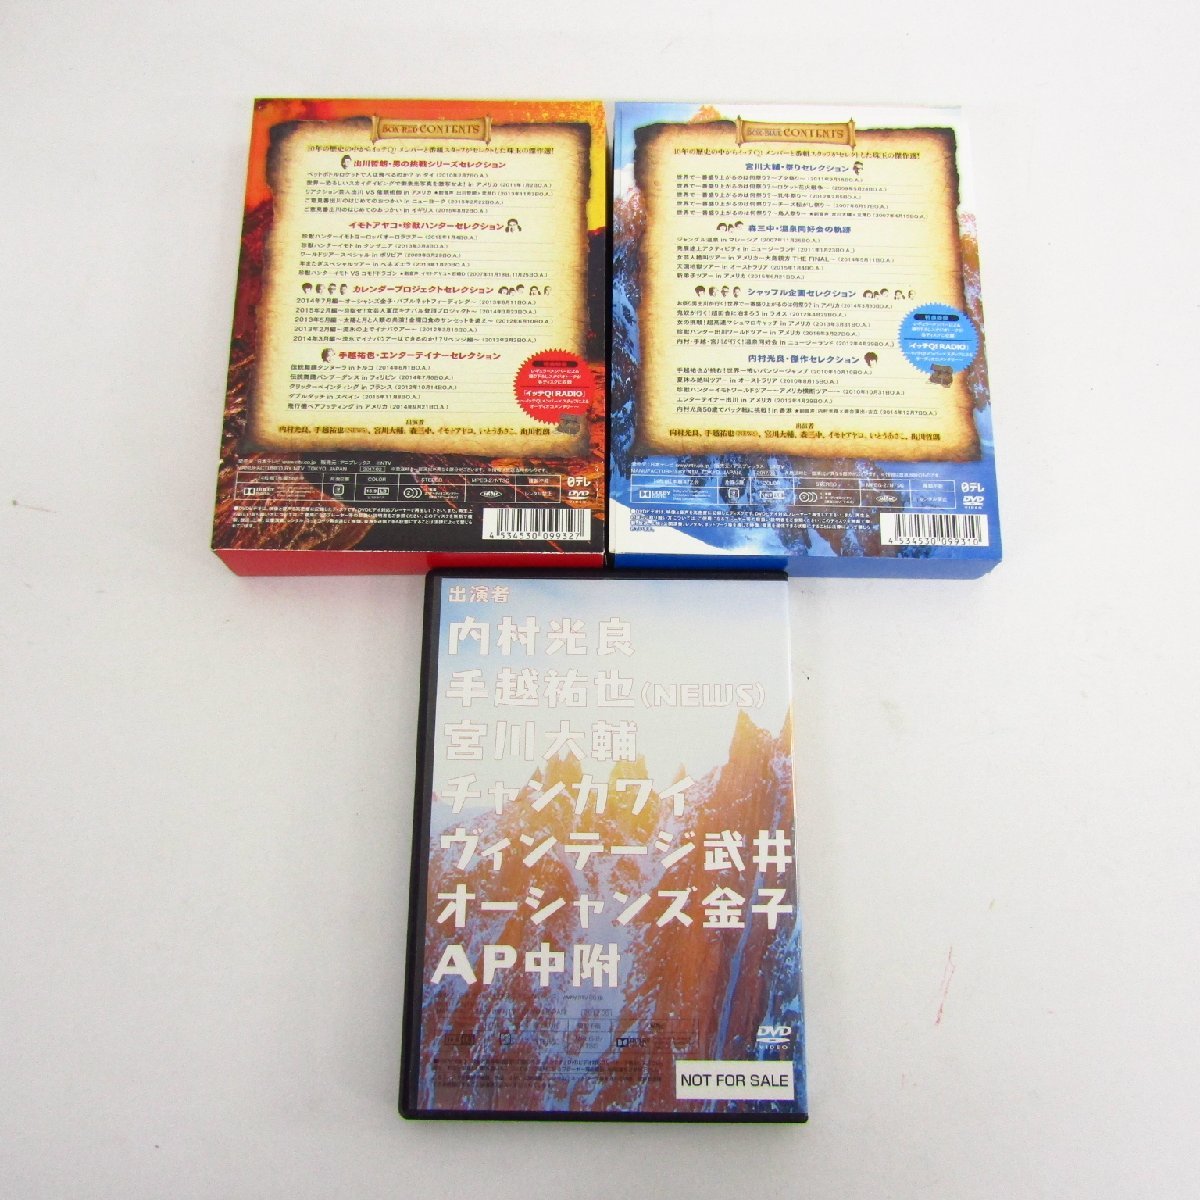 世界の果てまでイッテQ! 10周年記念 DVD-BOX- ブルー / レッド / 超限定エクストラDVD まとめ 3本セット 〓A7779_画像2